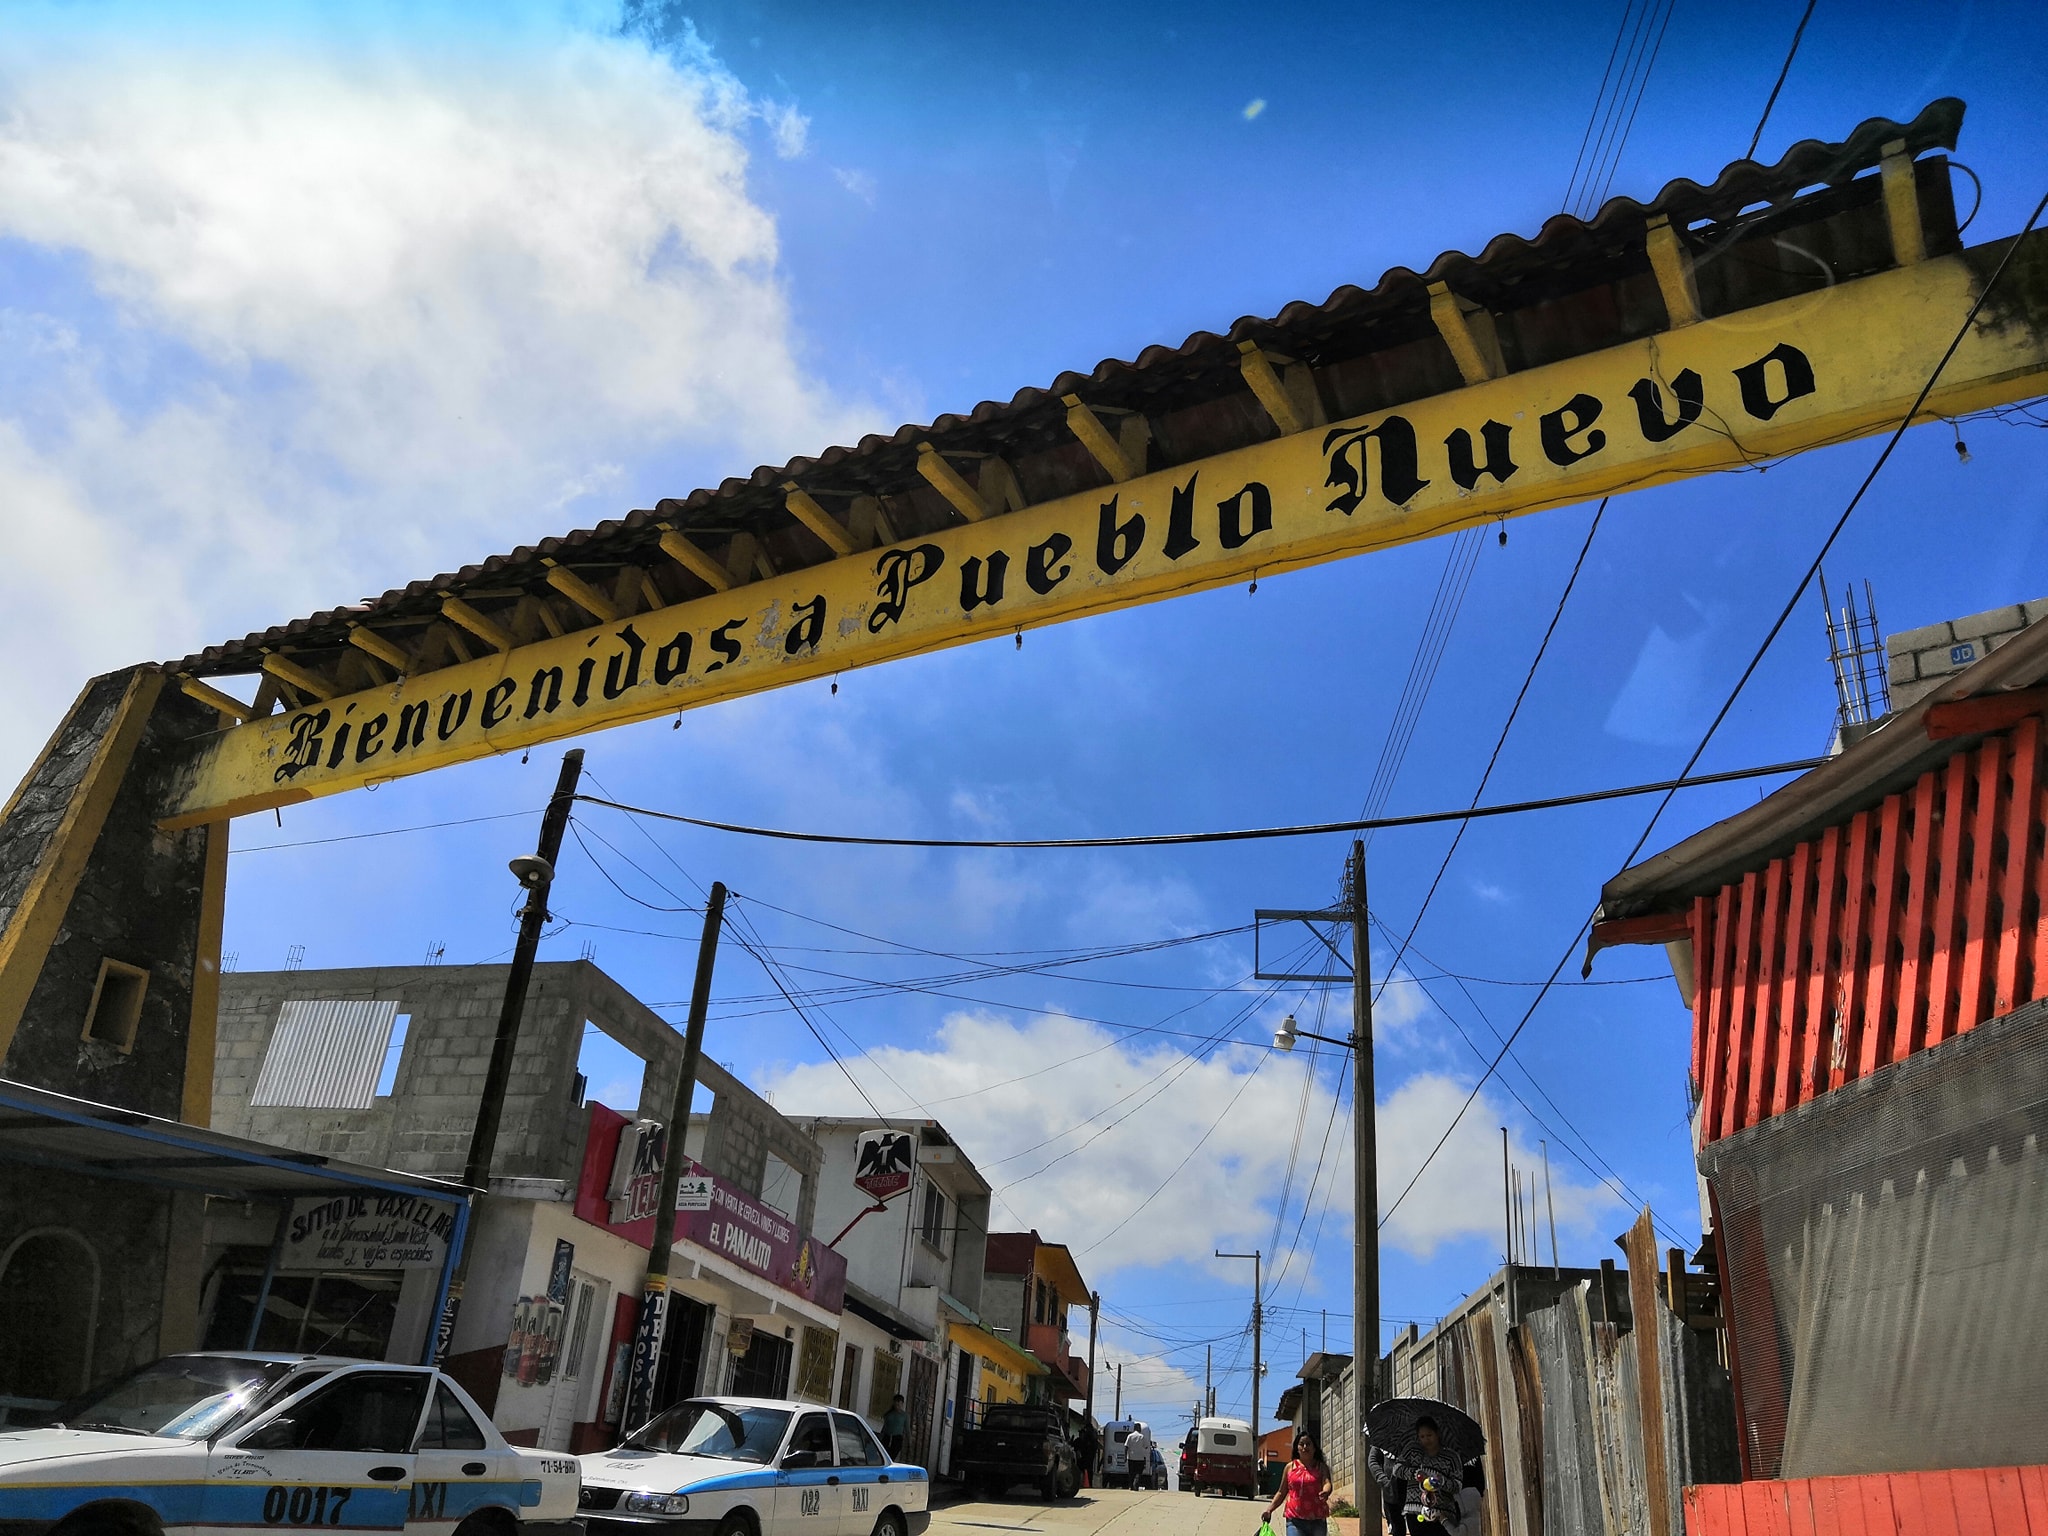 La localidad se ubica a unos 121 kilómetros de Tuxtla Gutiérrez, capital de Chiapas (Foto: Facebook/PuebloNuevoSolistahuacan)